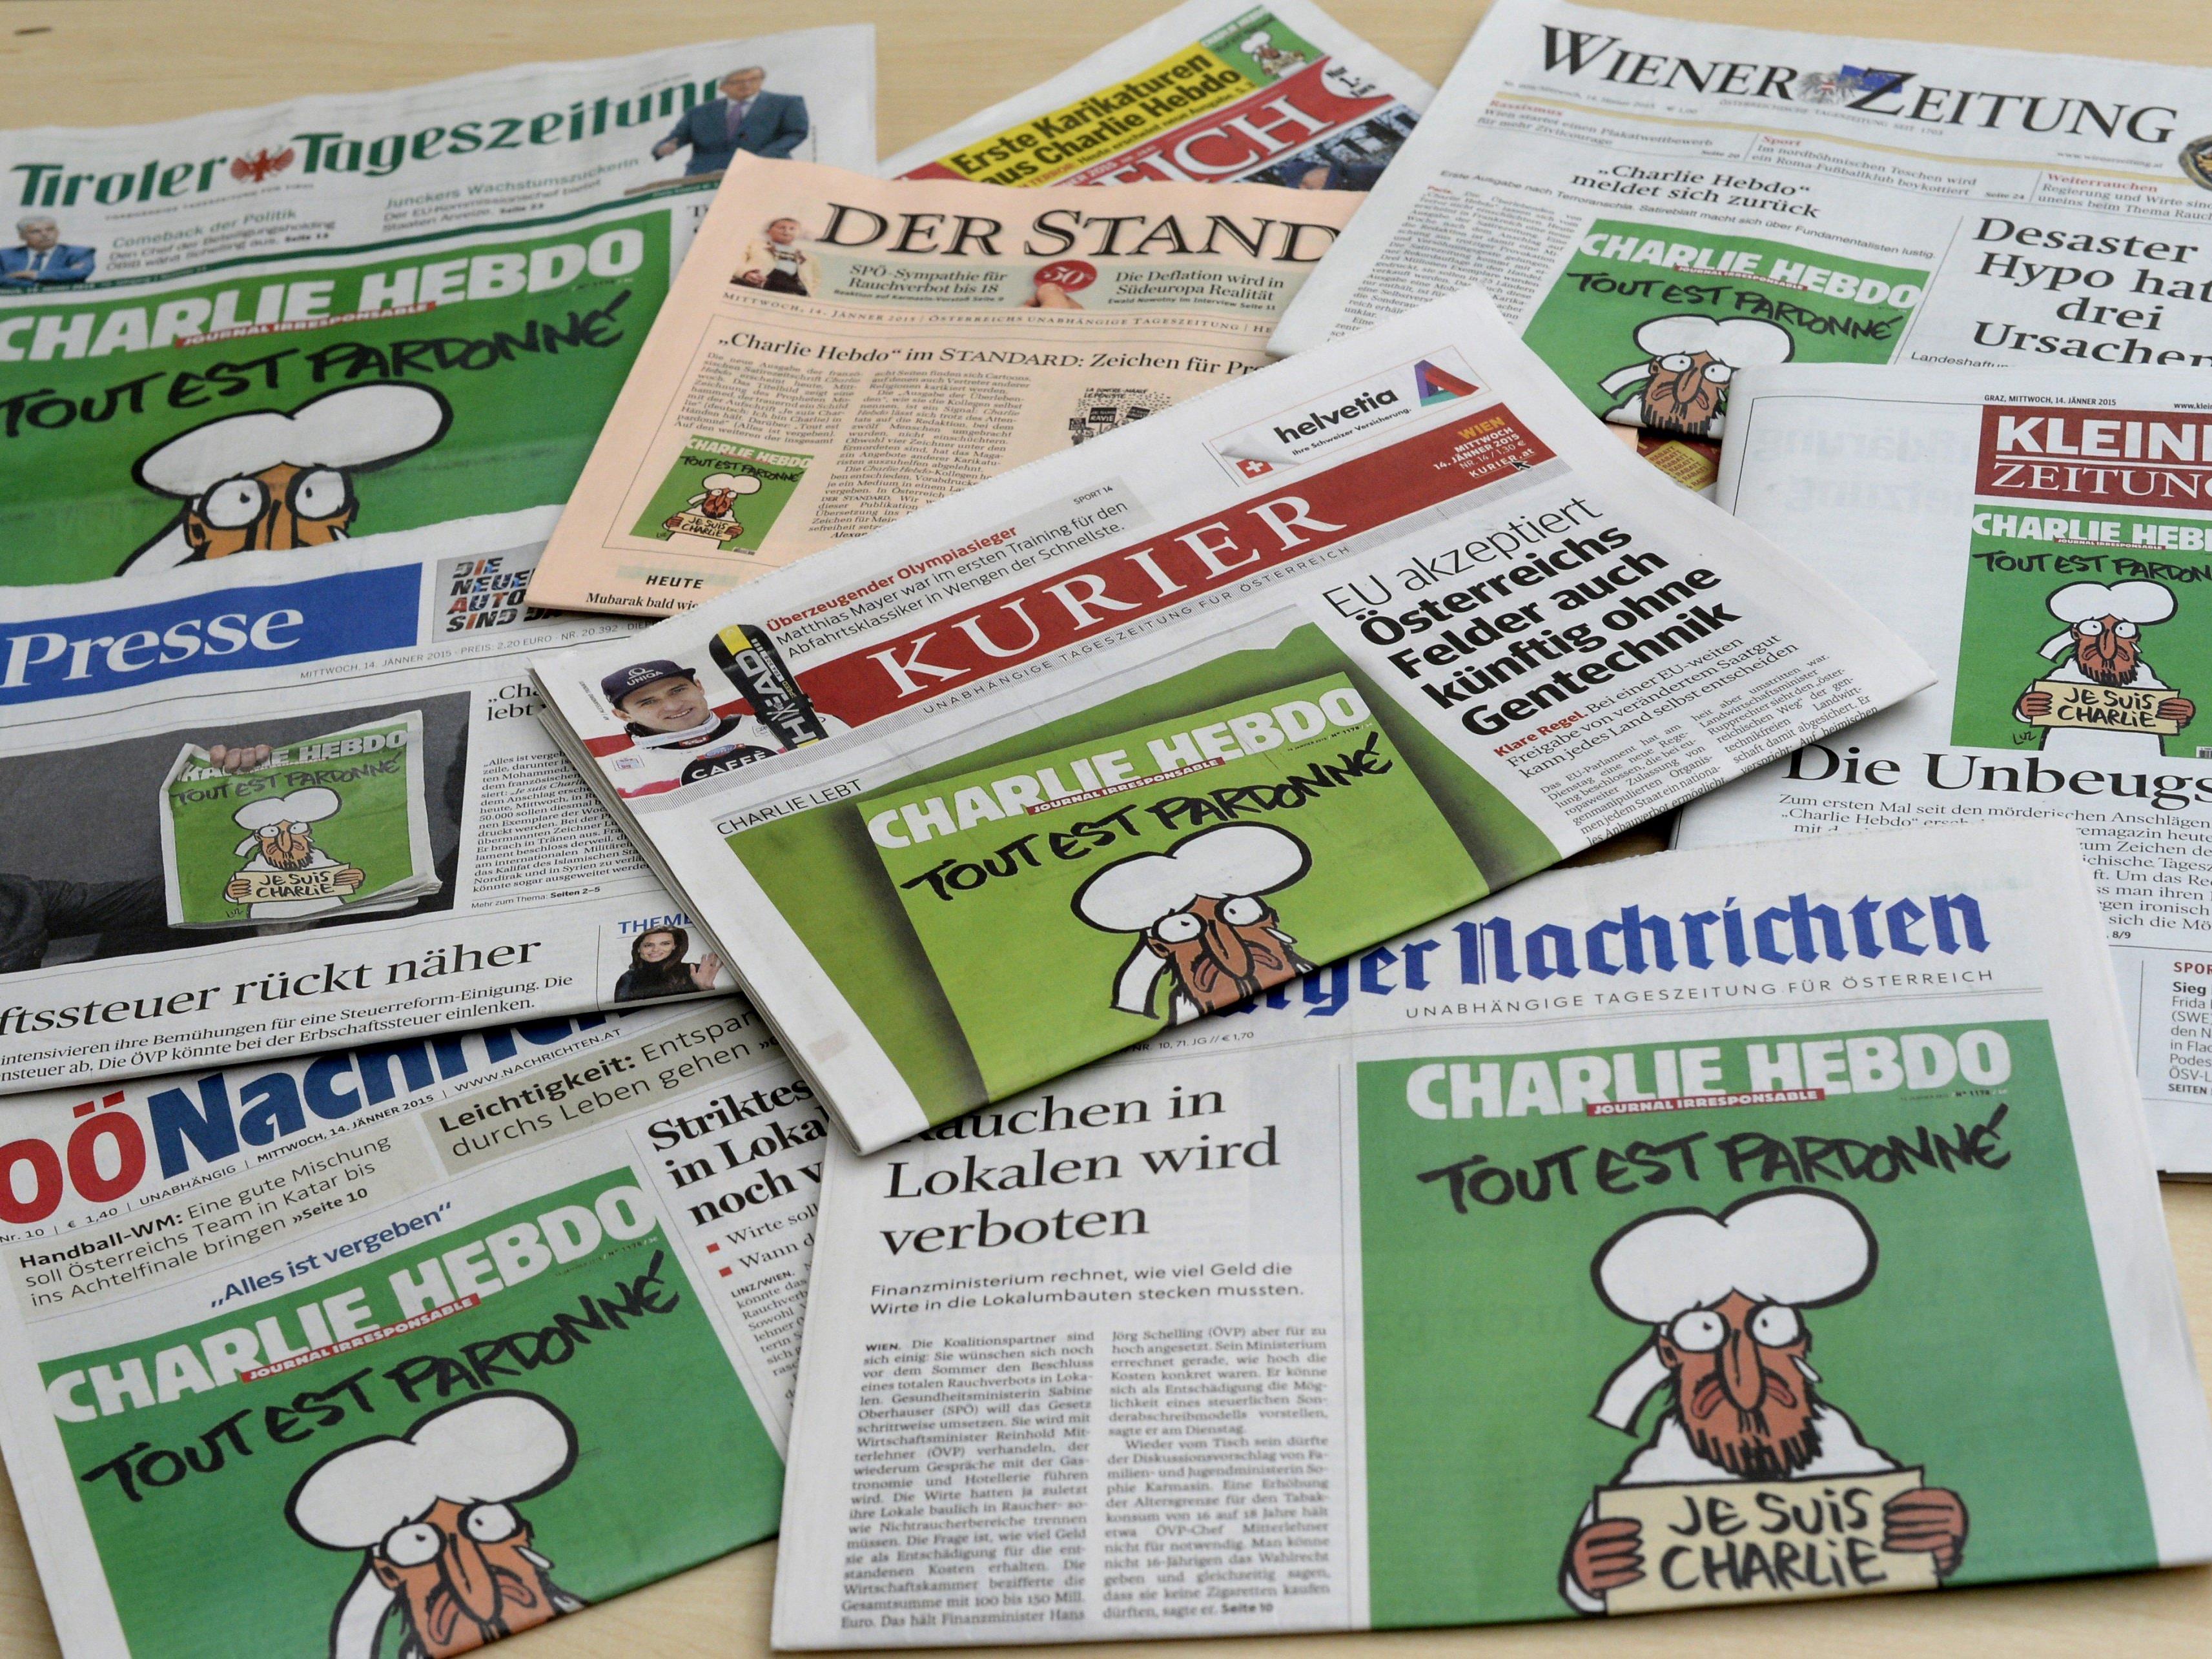 Die Pressefreiheit in Österreich leidet.